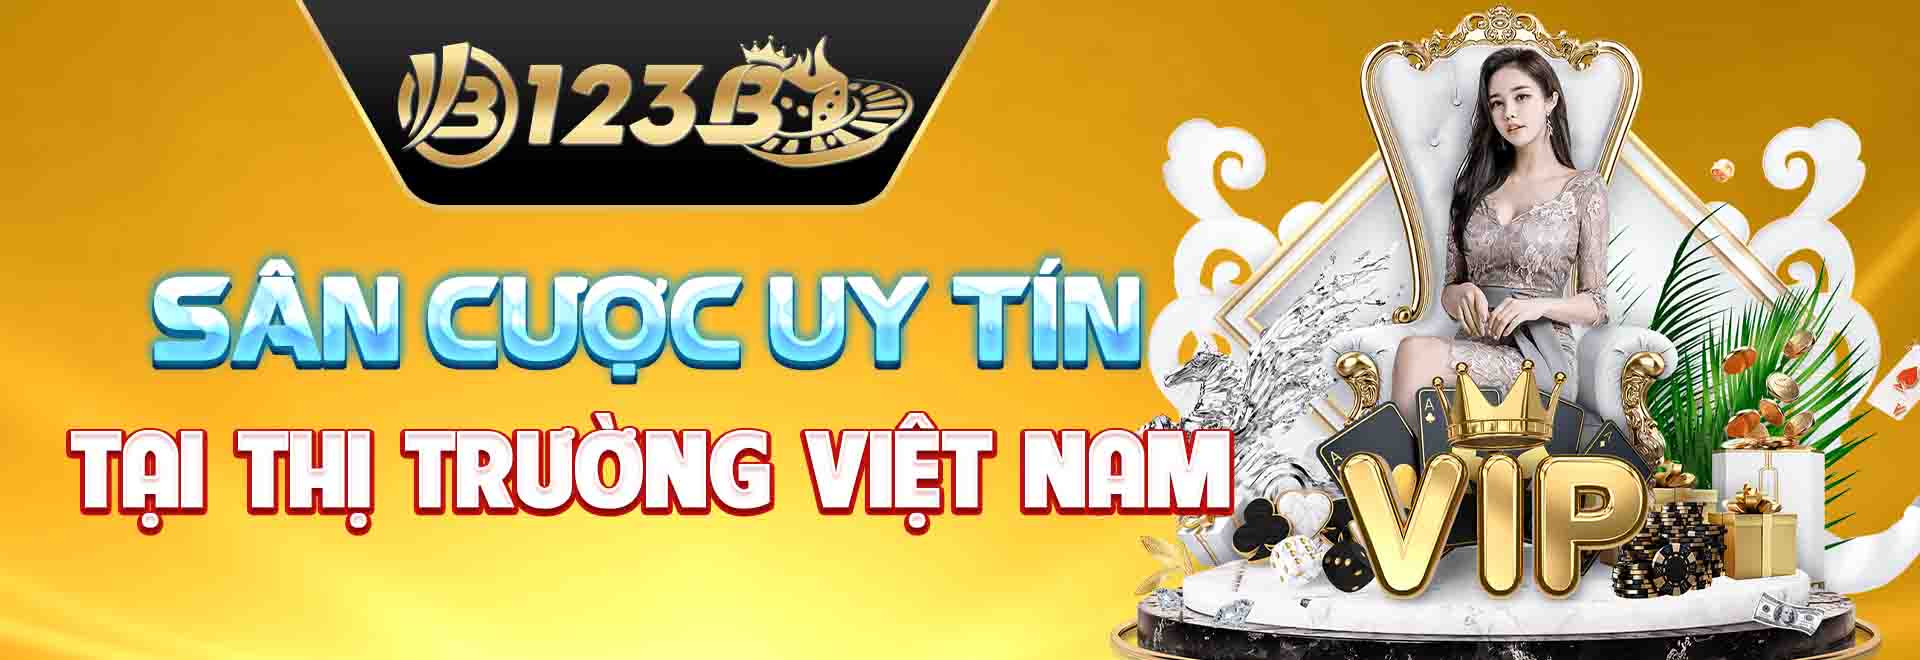 123B sàn cược uy tín tại thị trường Việt Nam